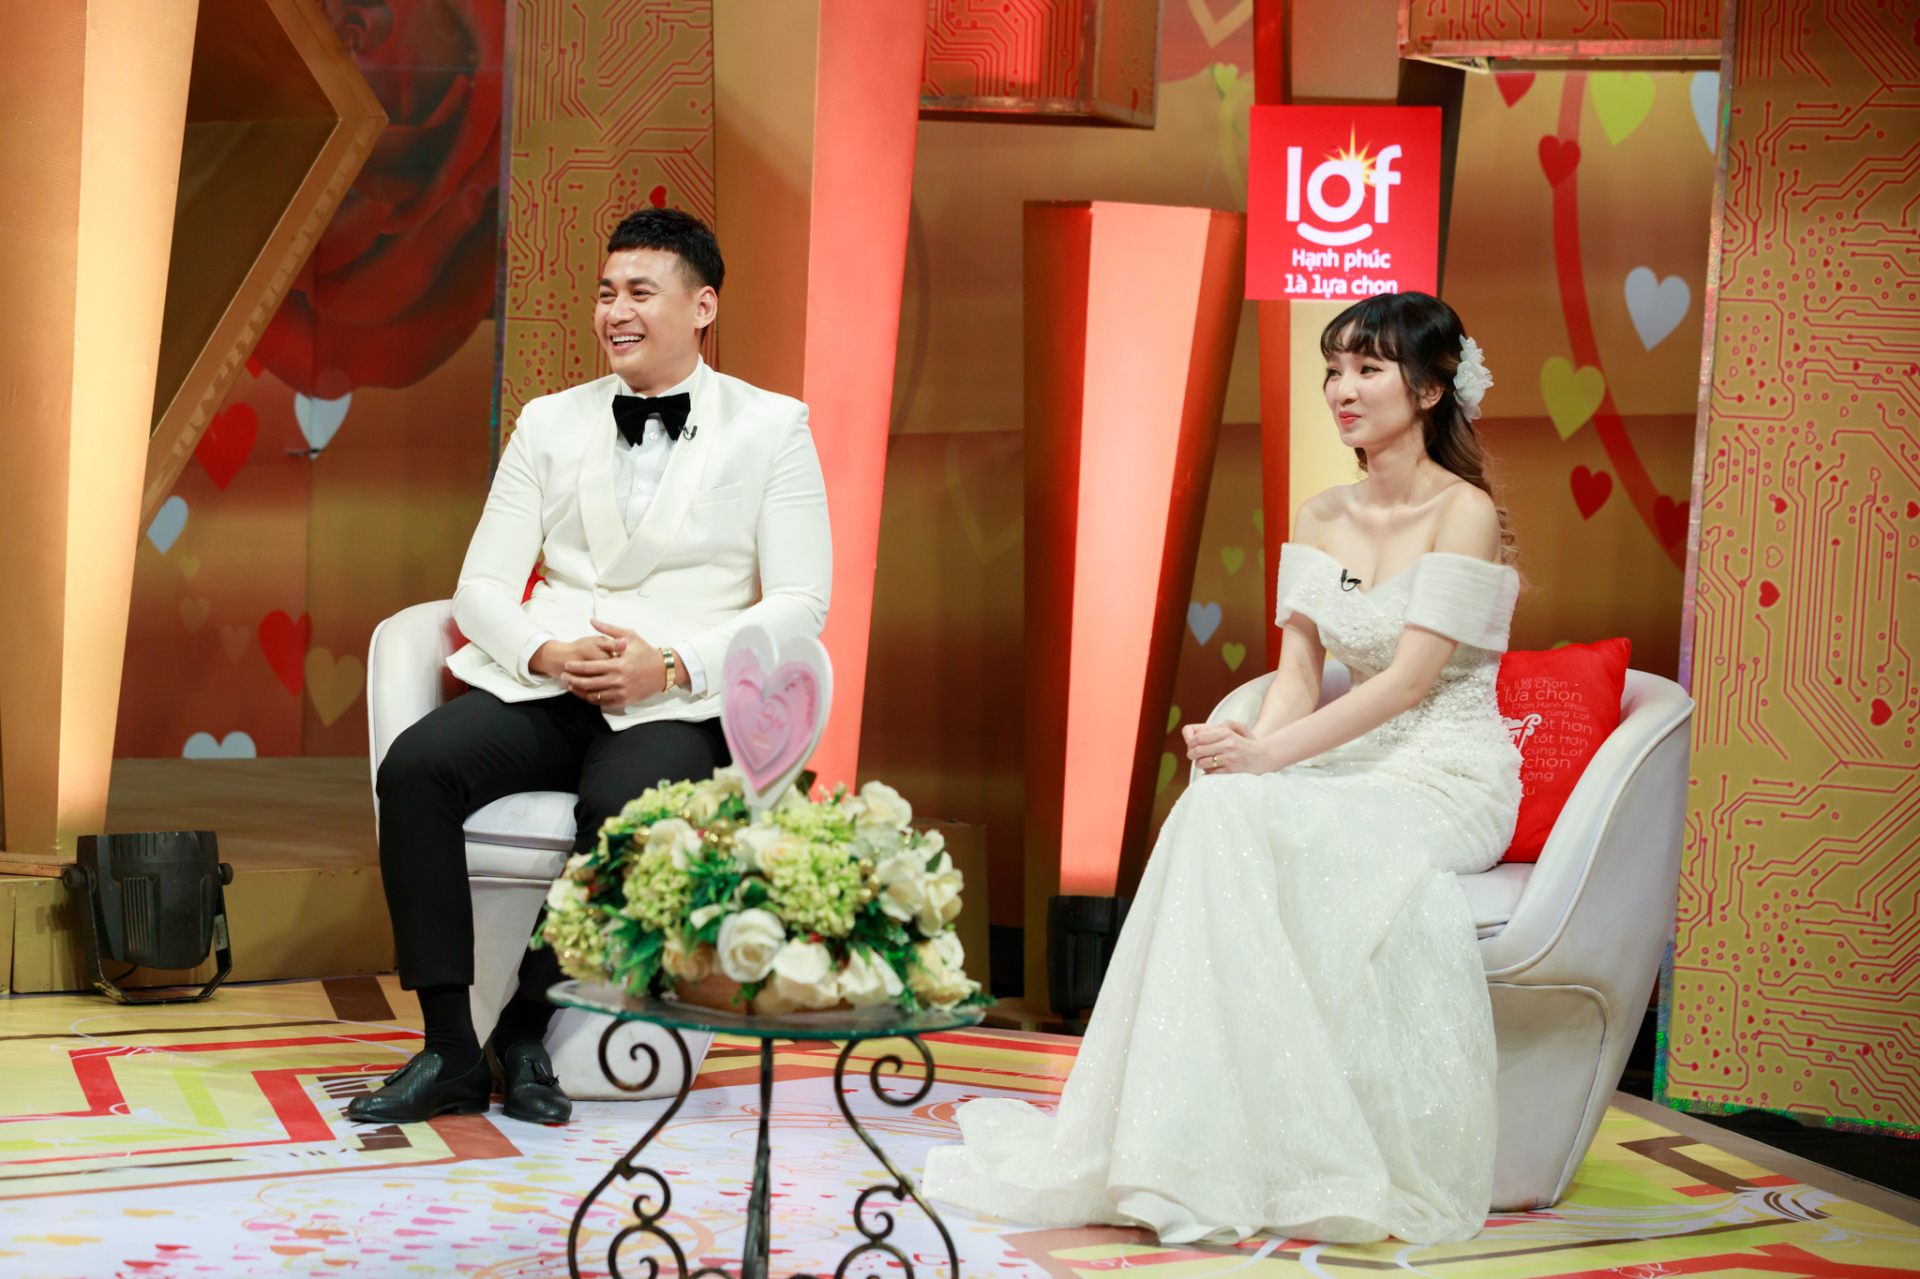 Diễn viên Ngọc Thuận lần đầu tiết lộ cuộc sống hôn nhân với vợ đẹp kém 18 tuổi - ảnh 2